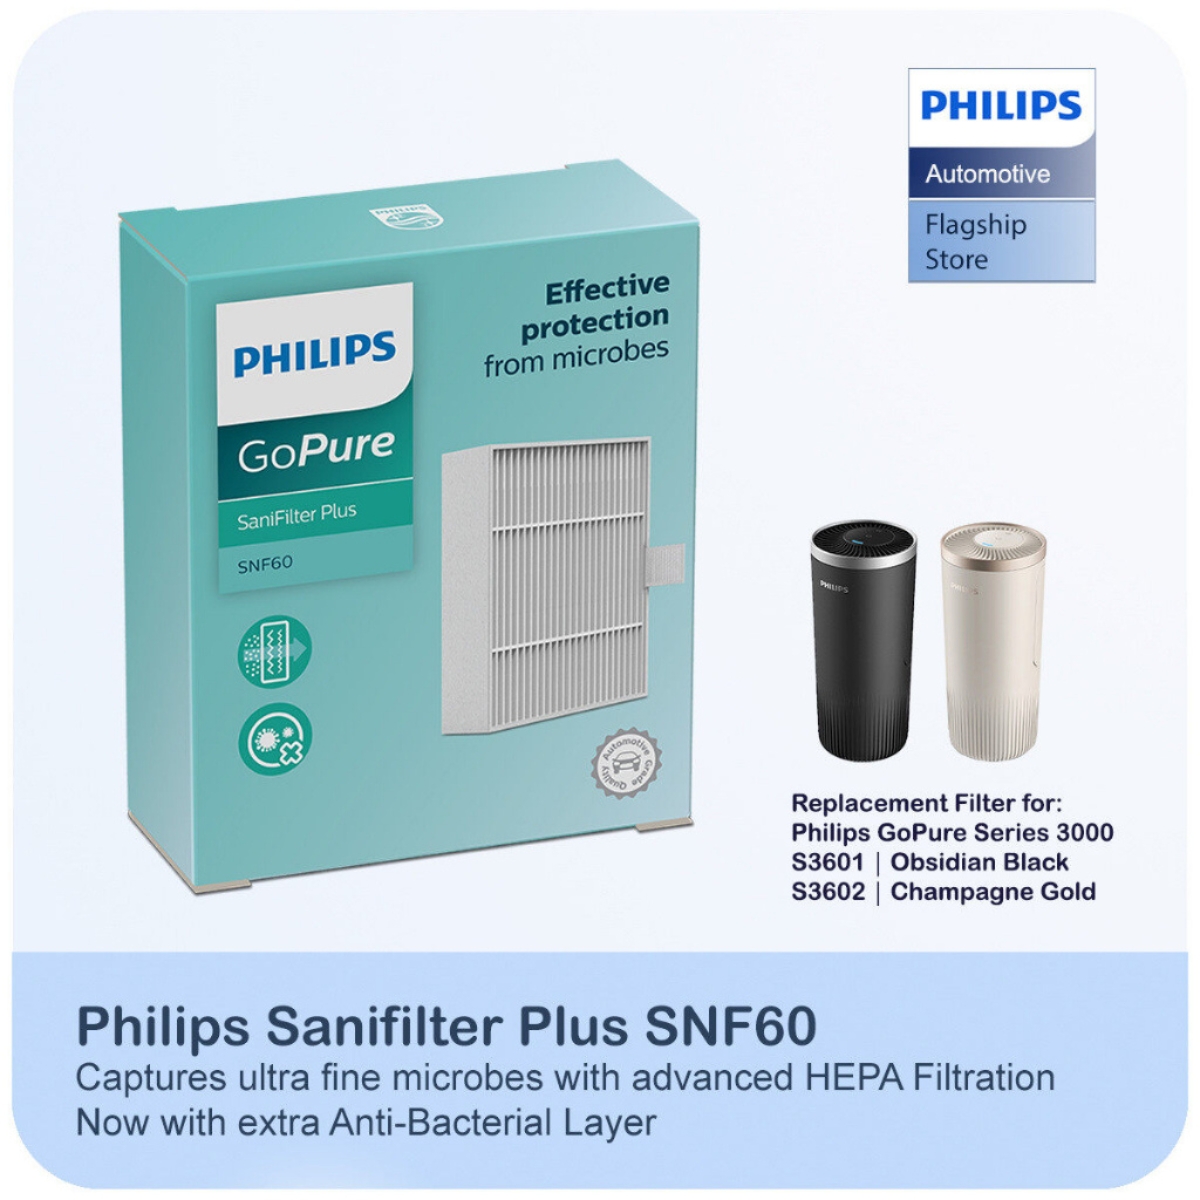 Bộ lọc thay thế Philips SNF60 dùng cho máy lọc không khí Philips S3601 S3602 - Hàng nhập khẩu